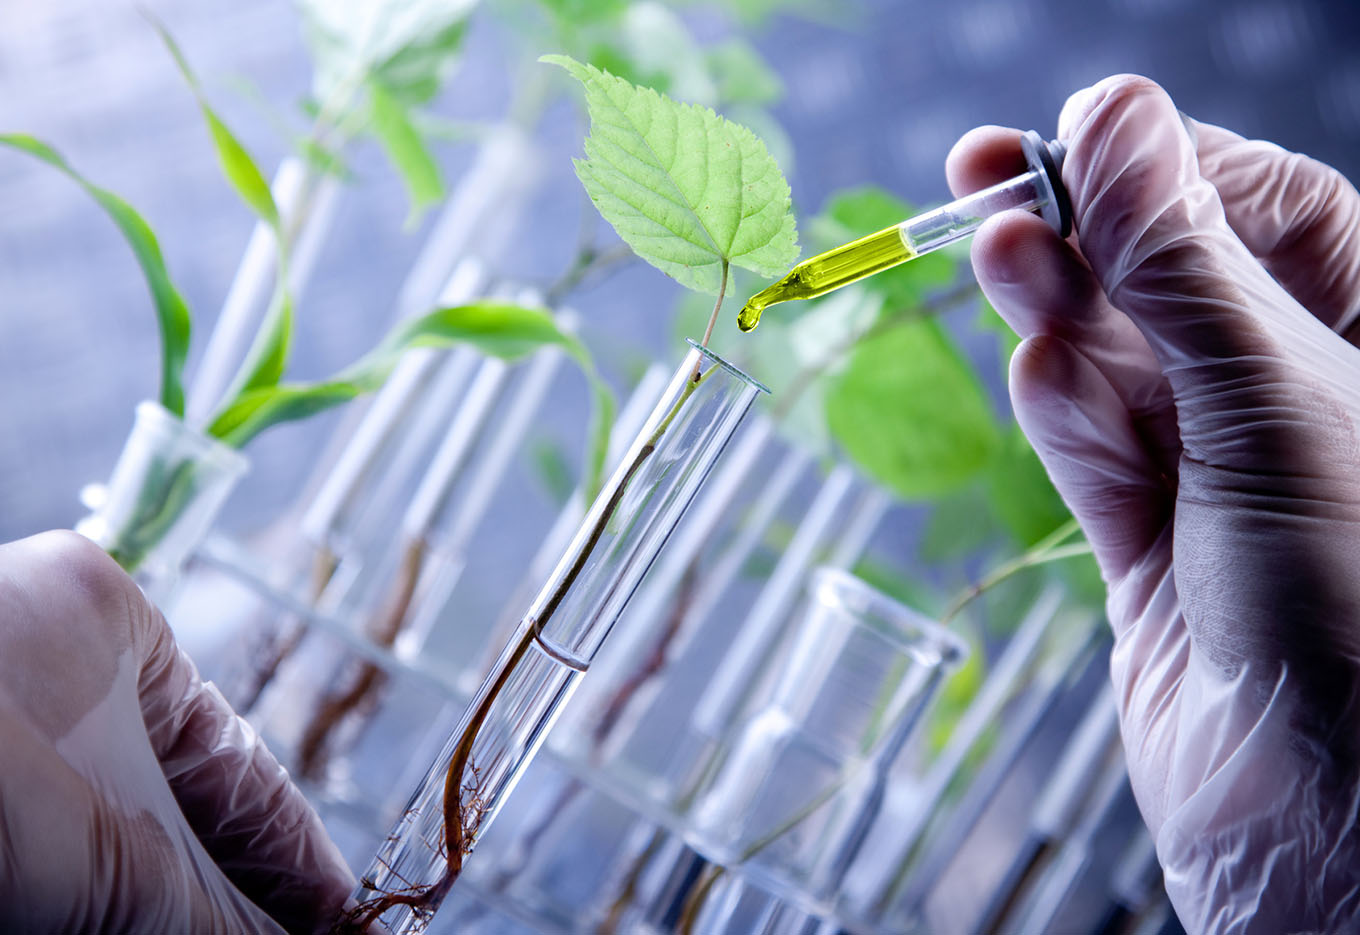 Bioinsumos + biotecnologia = inovação para uma agricultura mais sustentável